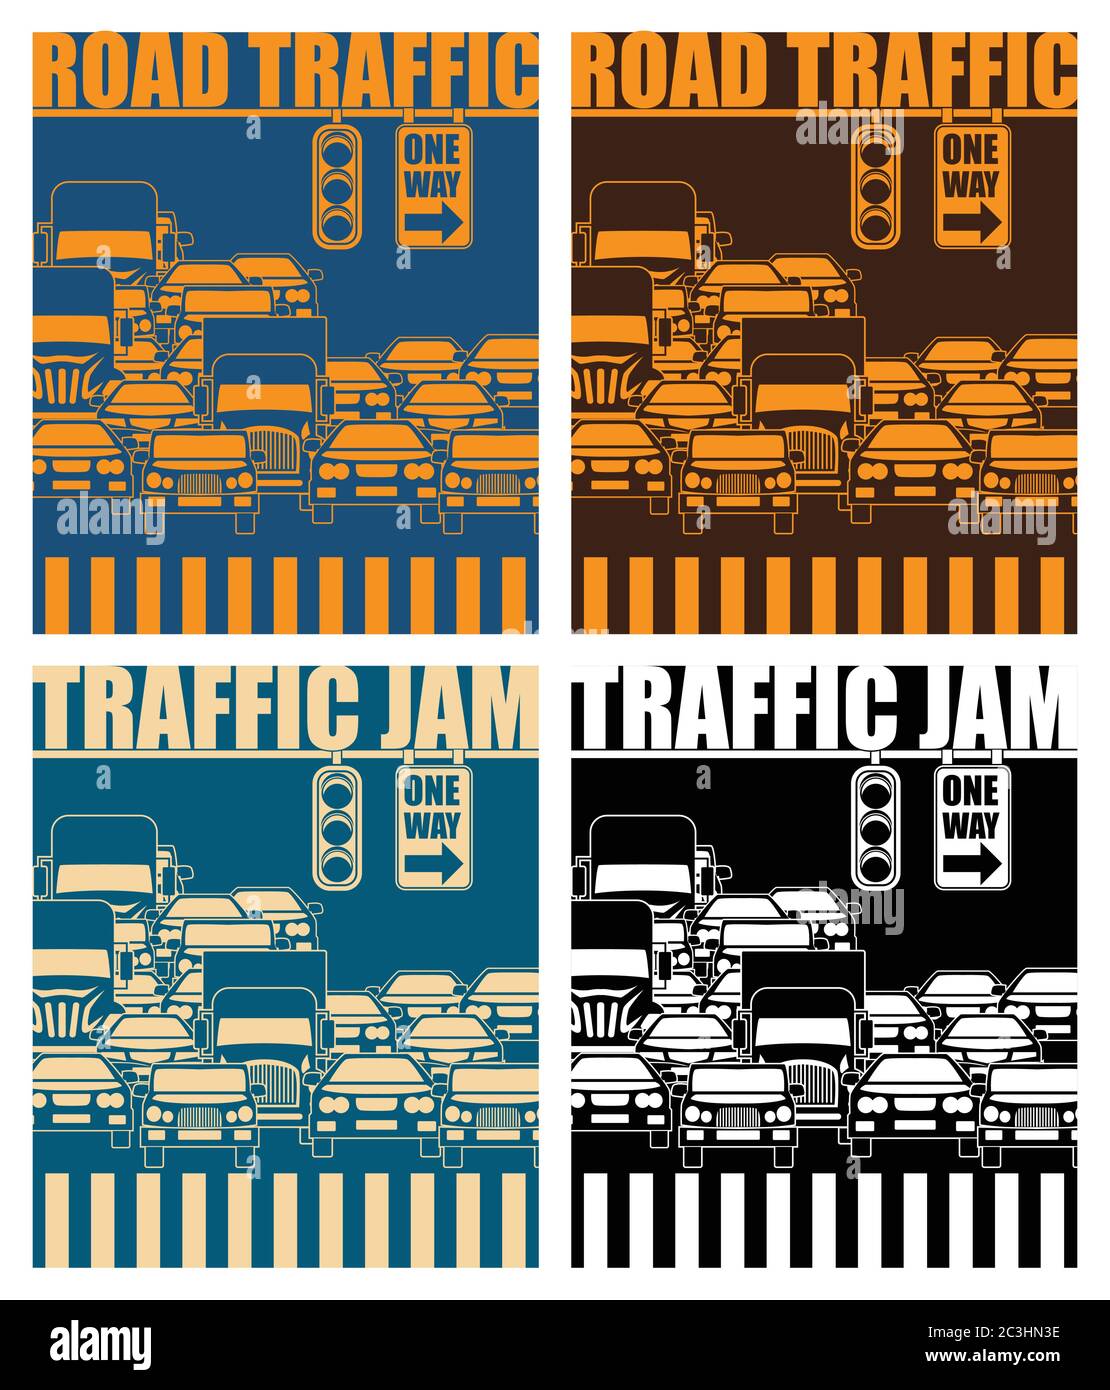 Ilustración de vectores estilizados sobre un tema de tráfico, transporte, atascos de tráfico en la hora punta, y la vida en la gran ciudad Ilustración del Vector